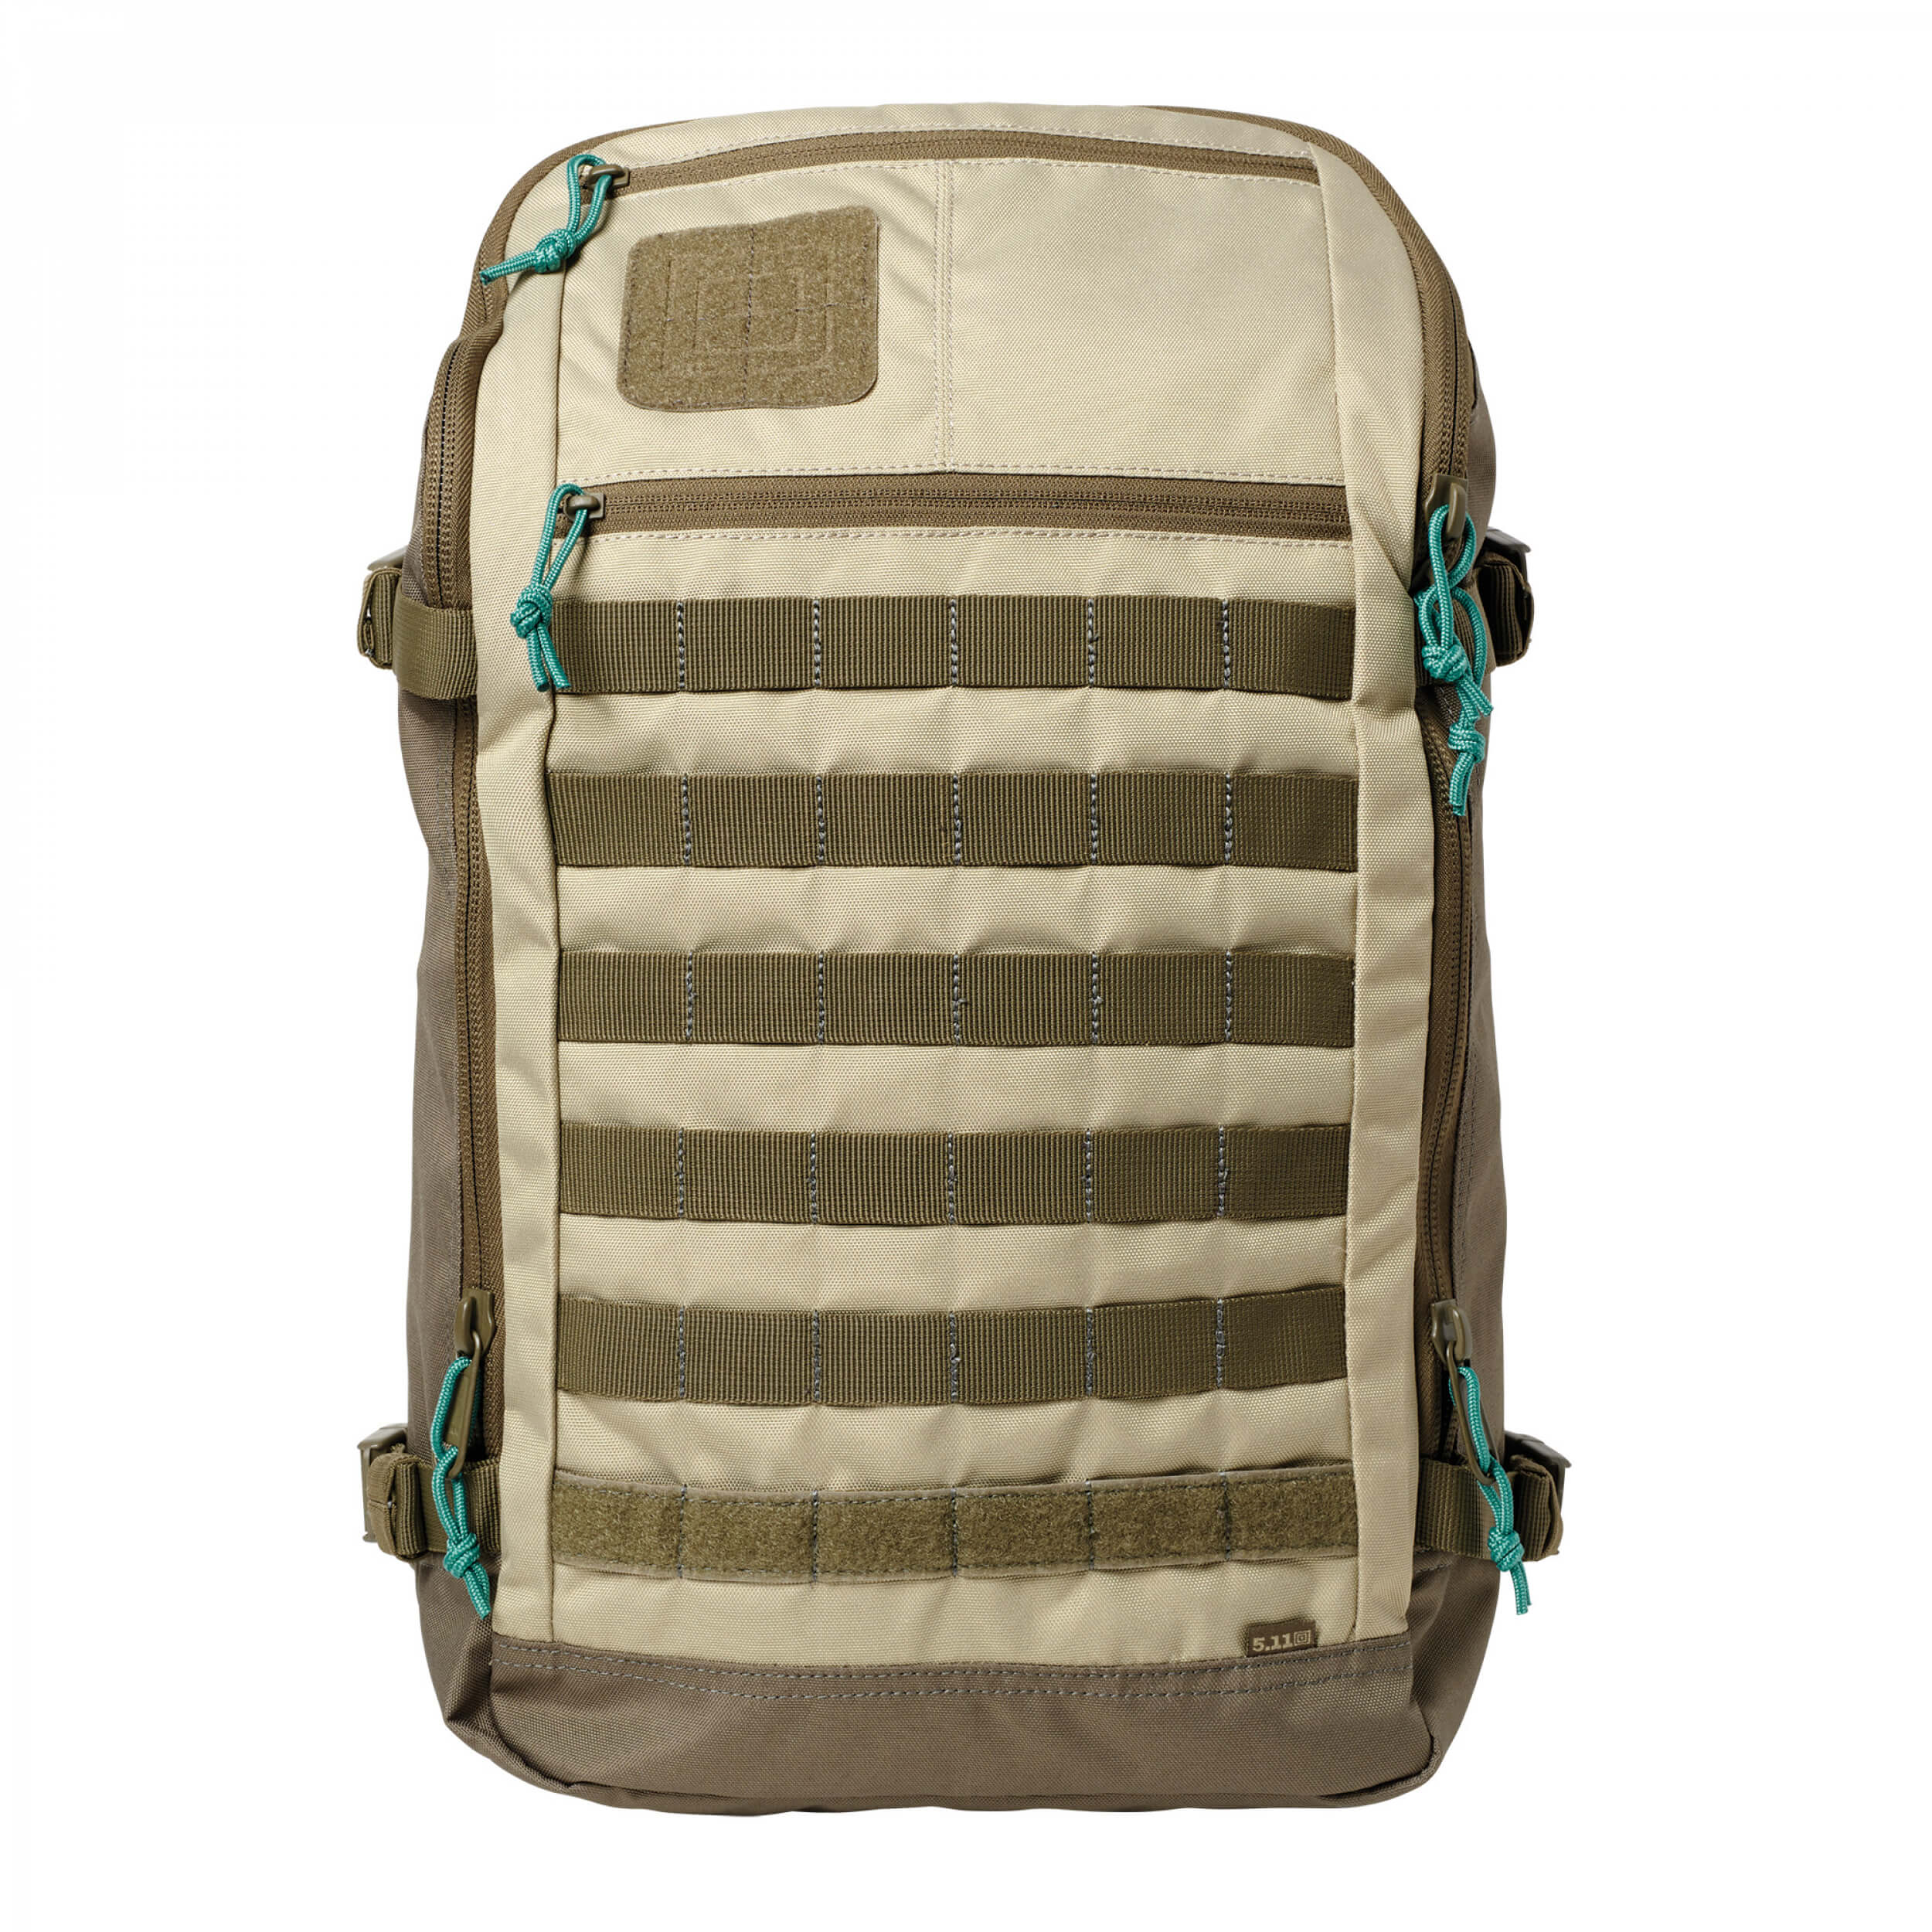 5.11 Tactical Rapid Quad Zip Pack 27L Backpack KHAKI (055)